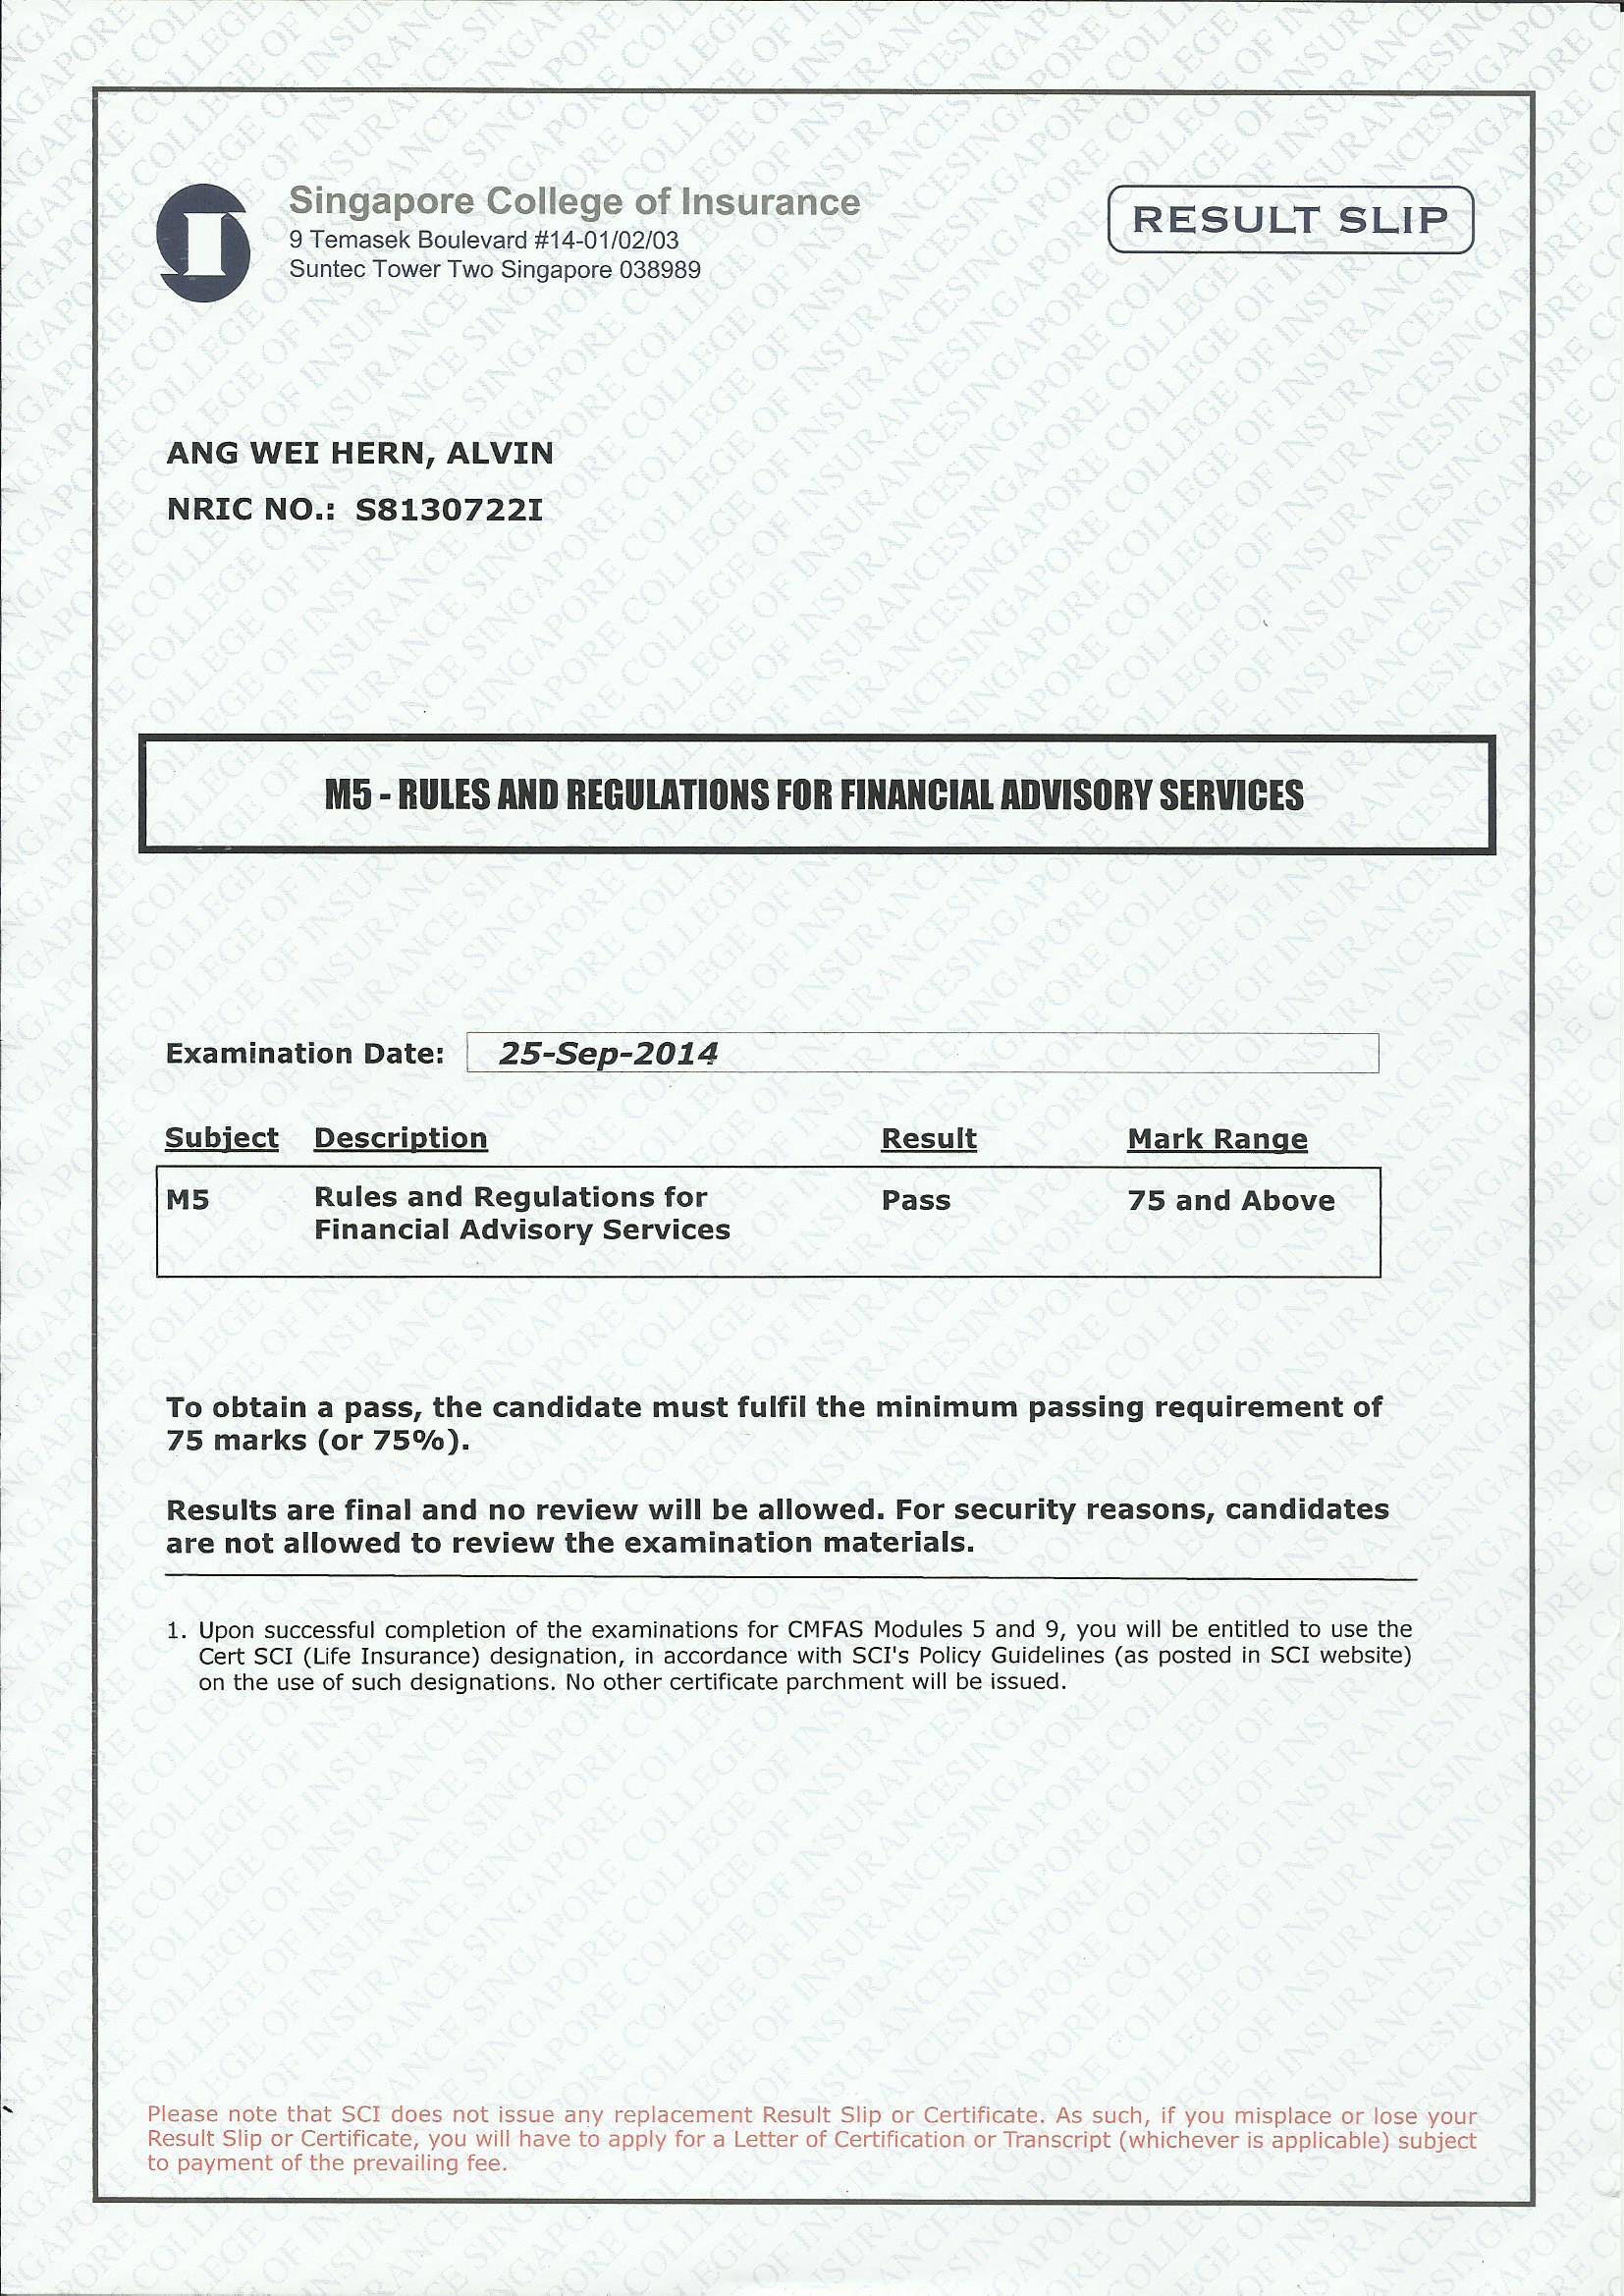 M5 Passing Certificate.jpg